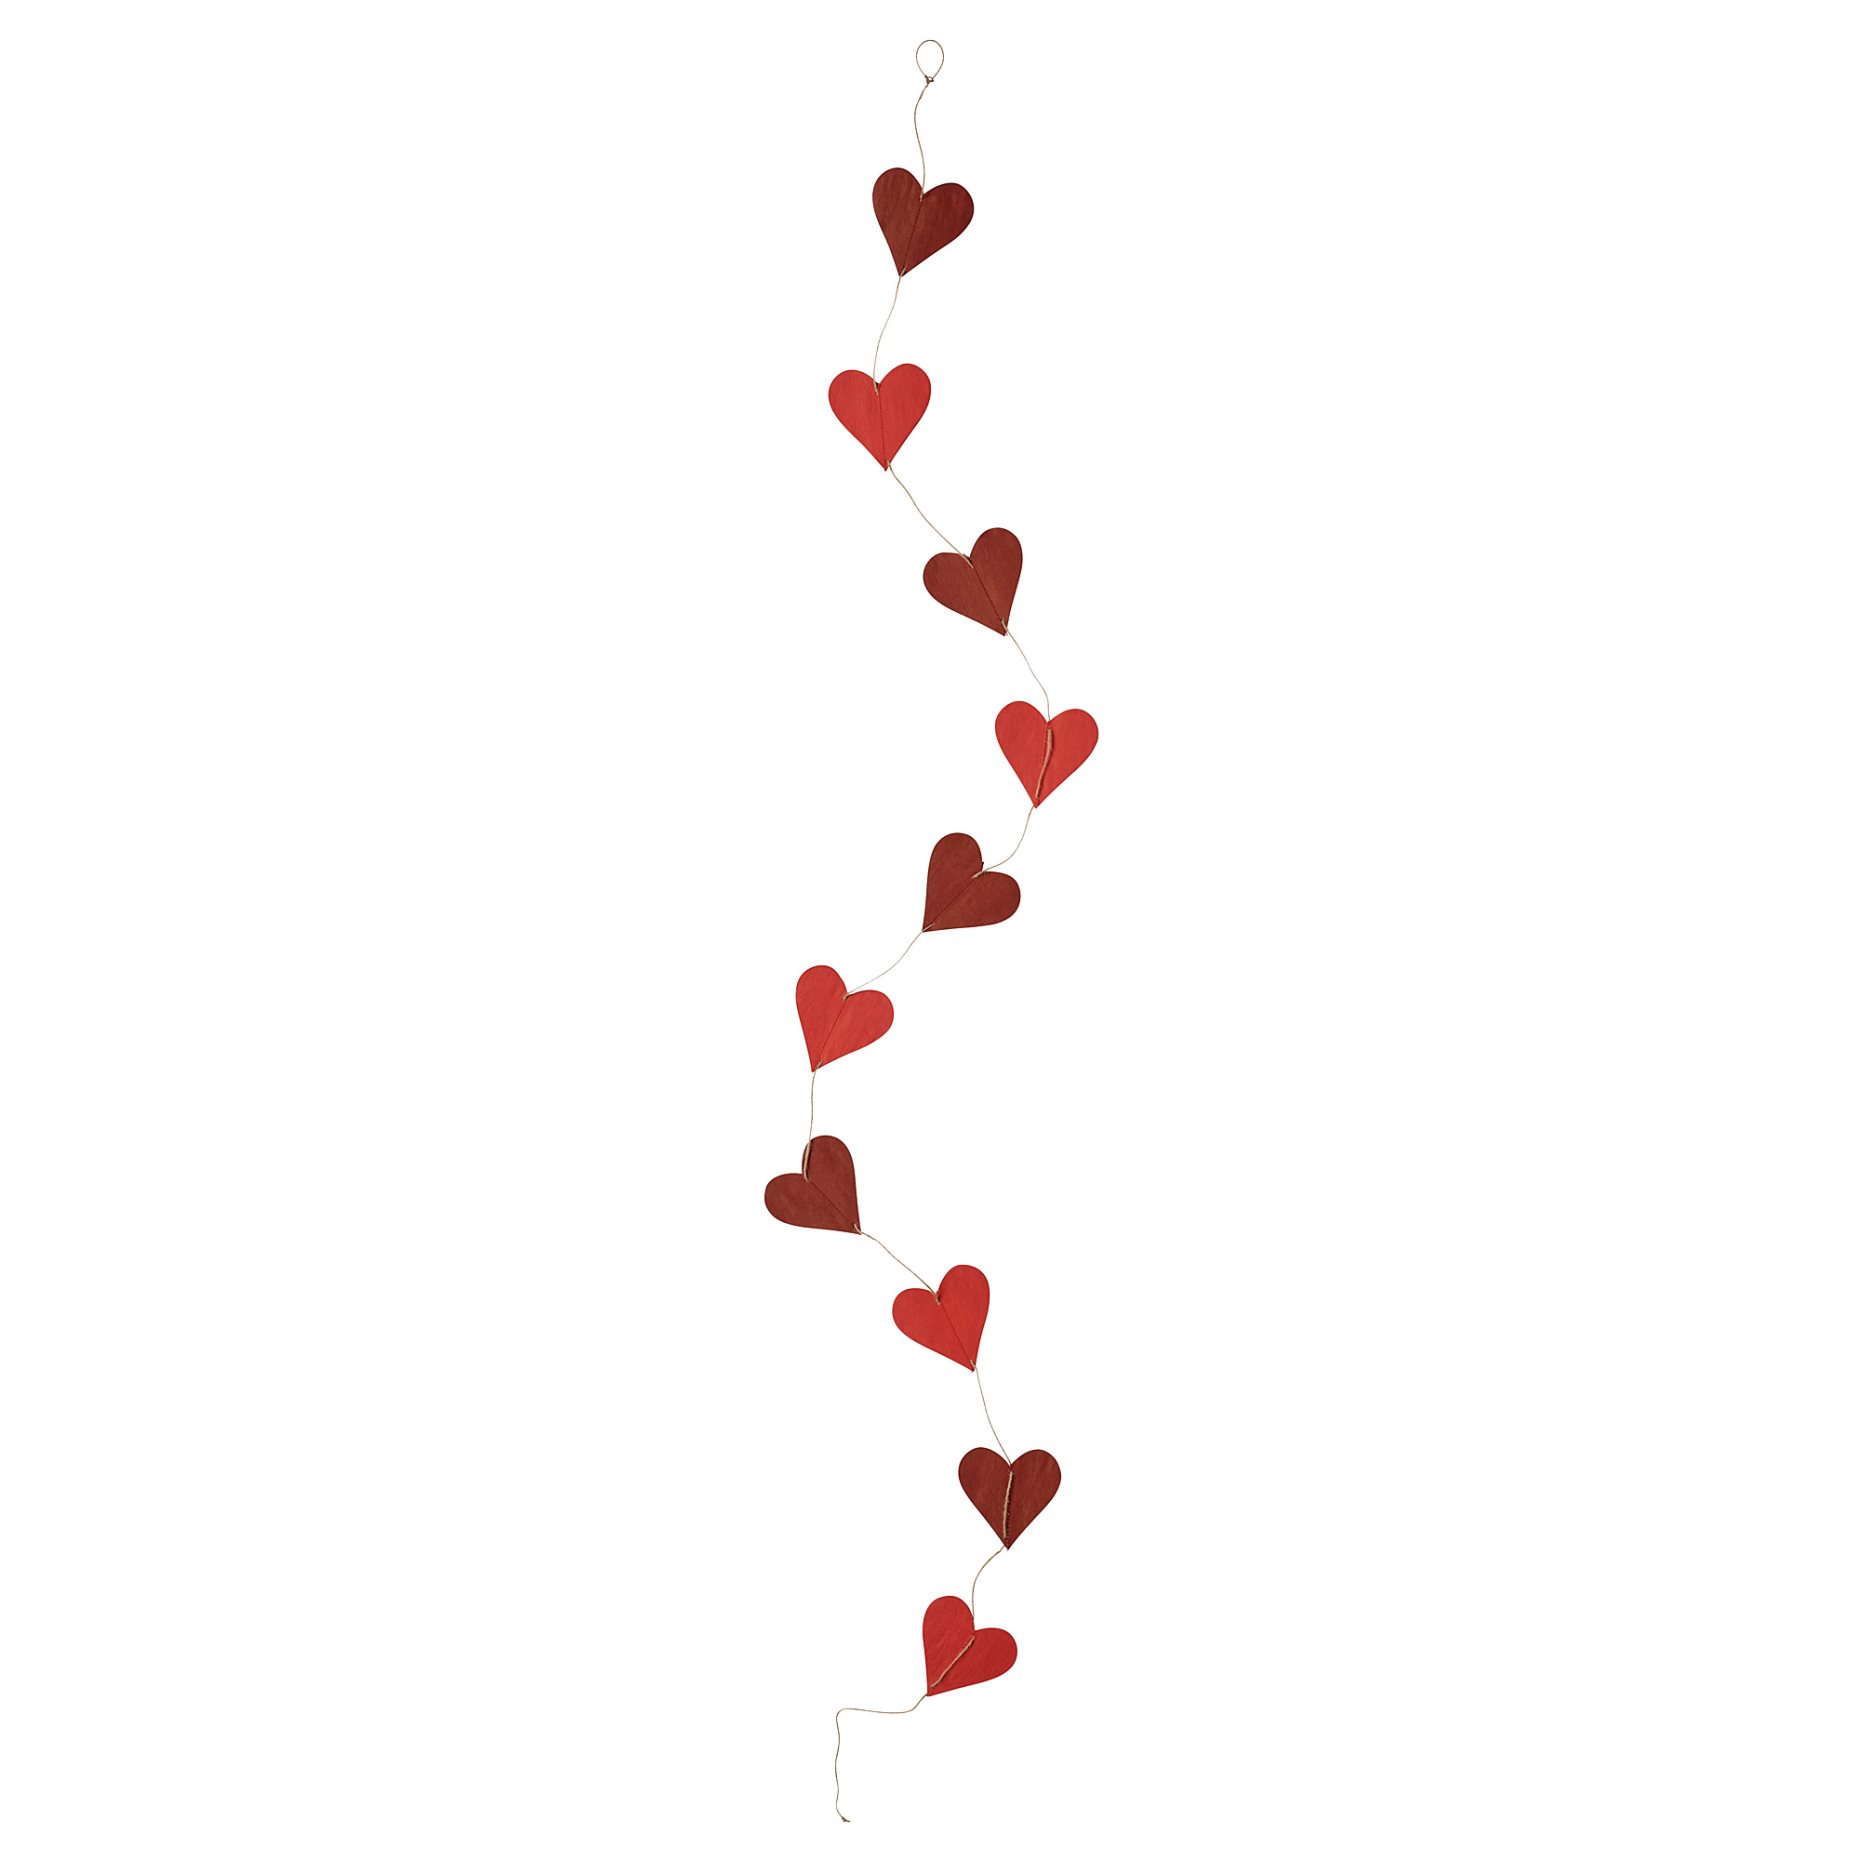 VINTERFINT, γιρλάντα/χειροποίητο σε σχήμα καρδιάς, 1.8 m, 105.245.12